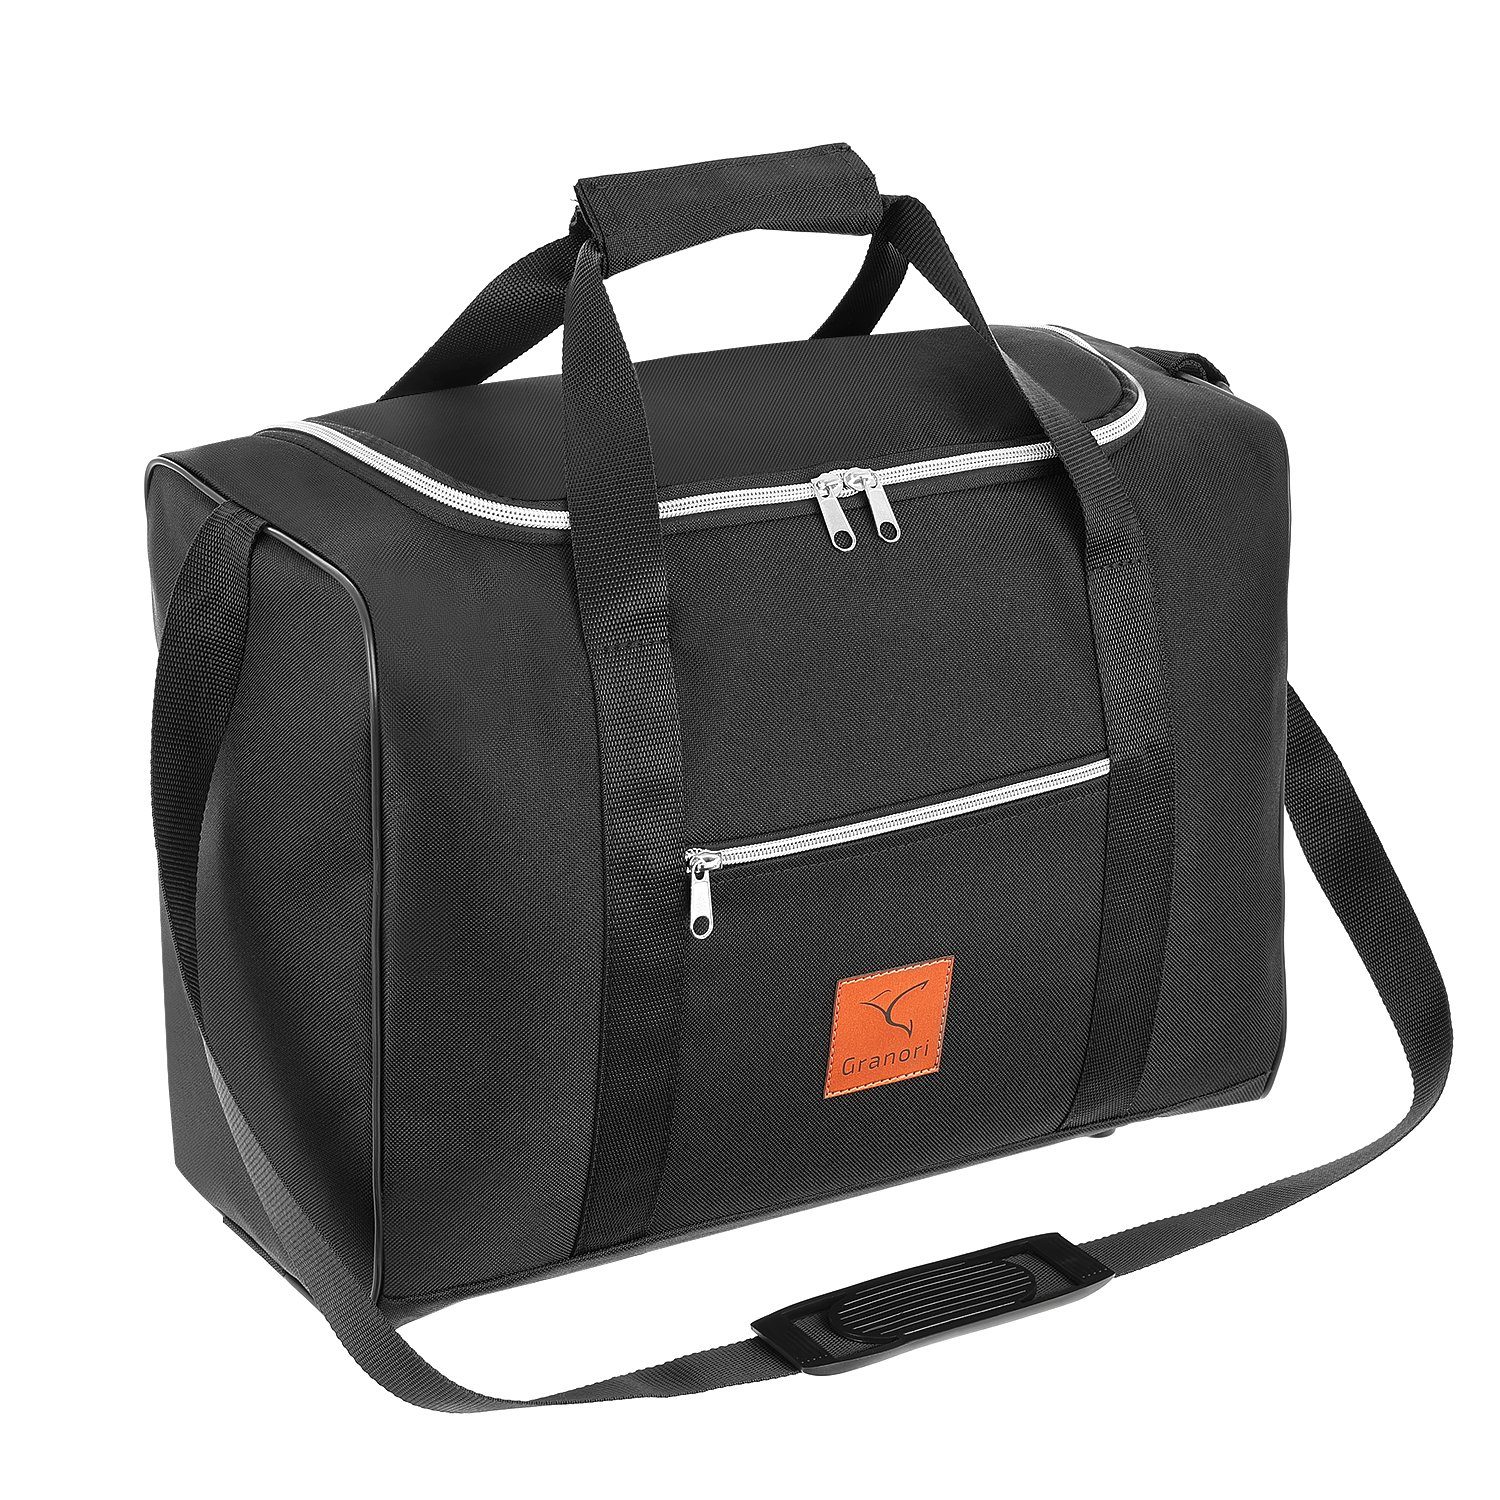 Granori Reisetasche 40x30x20 cm Handgepäck für Flüge mit z. B. Wizz Air (Modell WT2), extra leicht, mit abschließbarem Fach und verstellbarem Schultergurt Schwarz